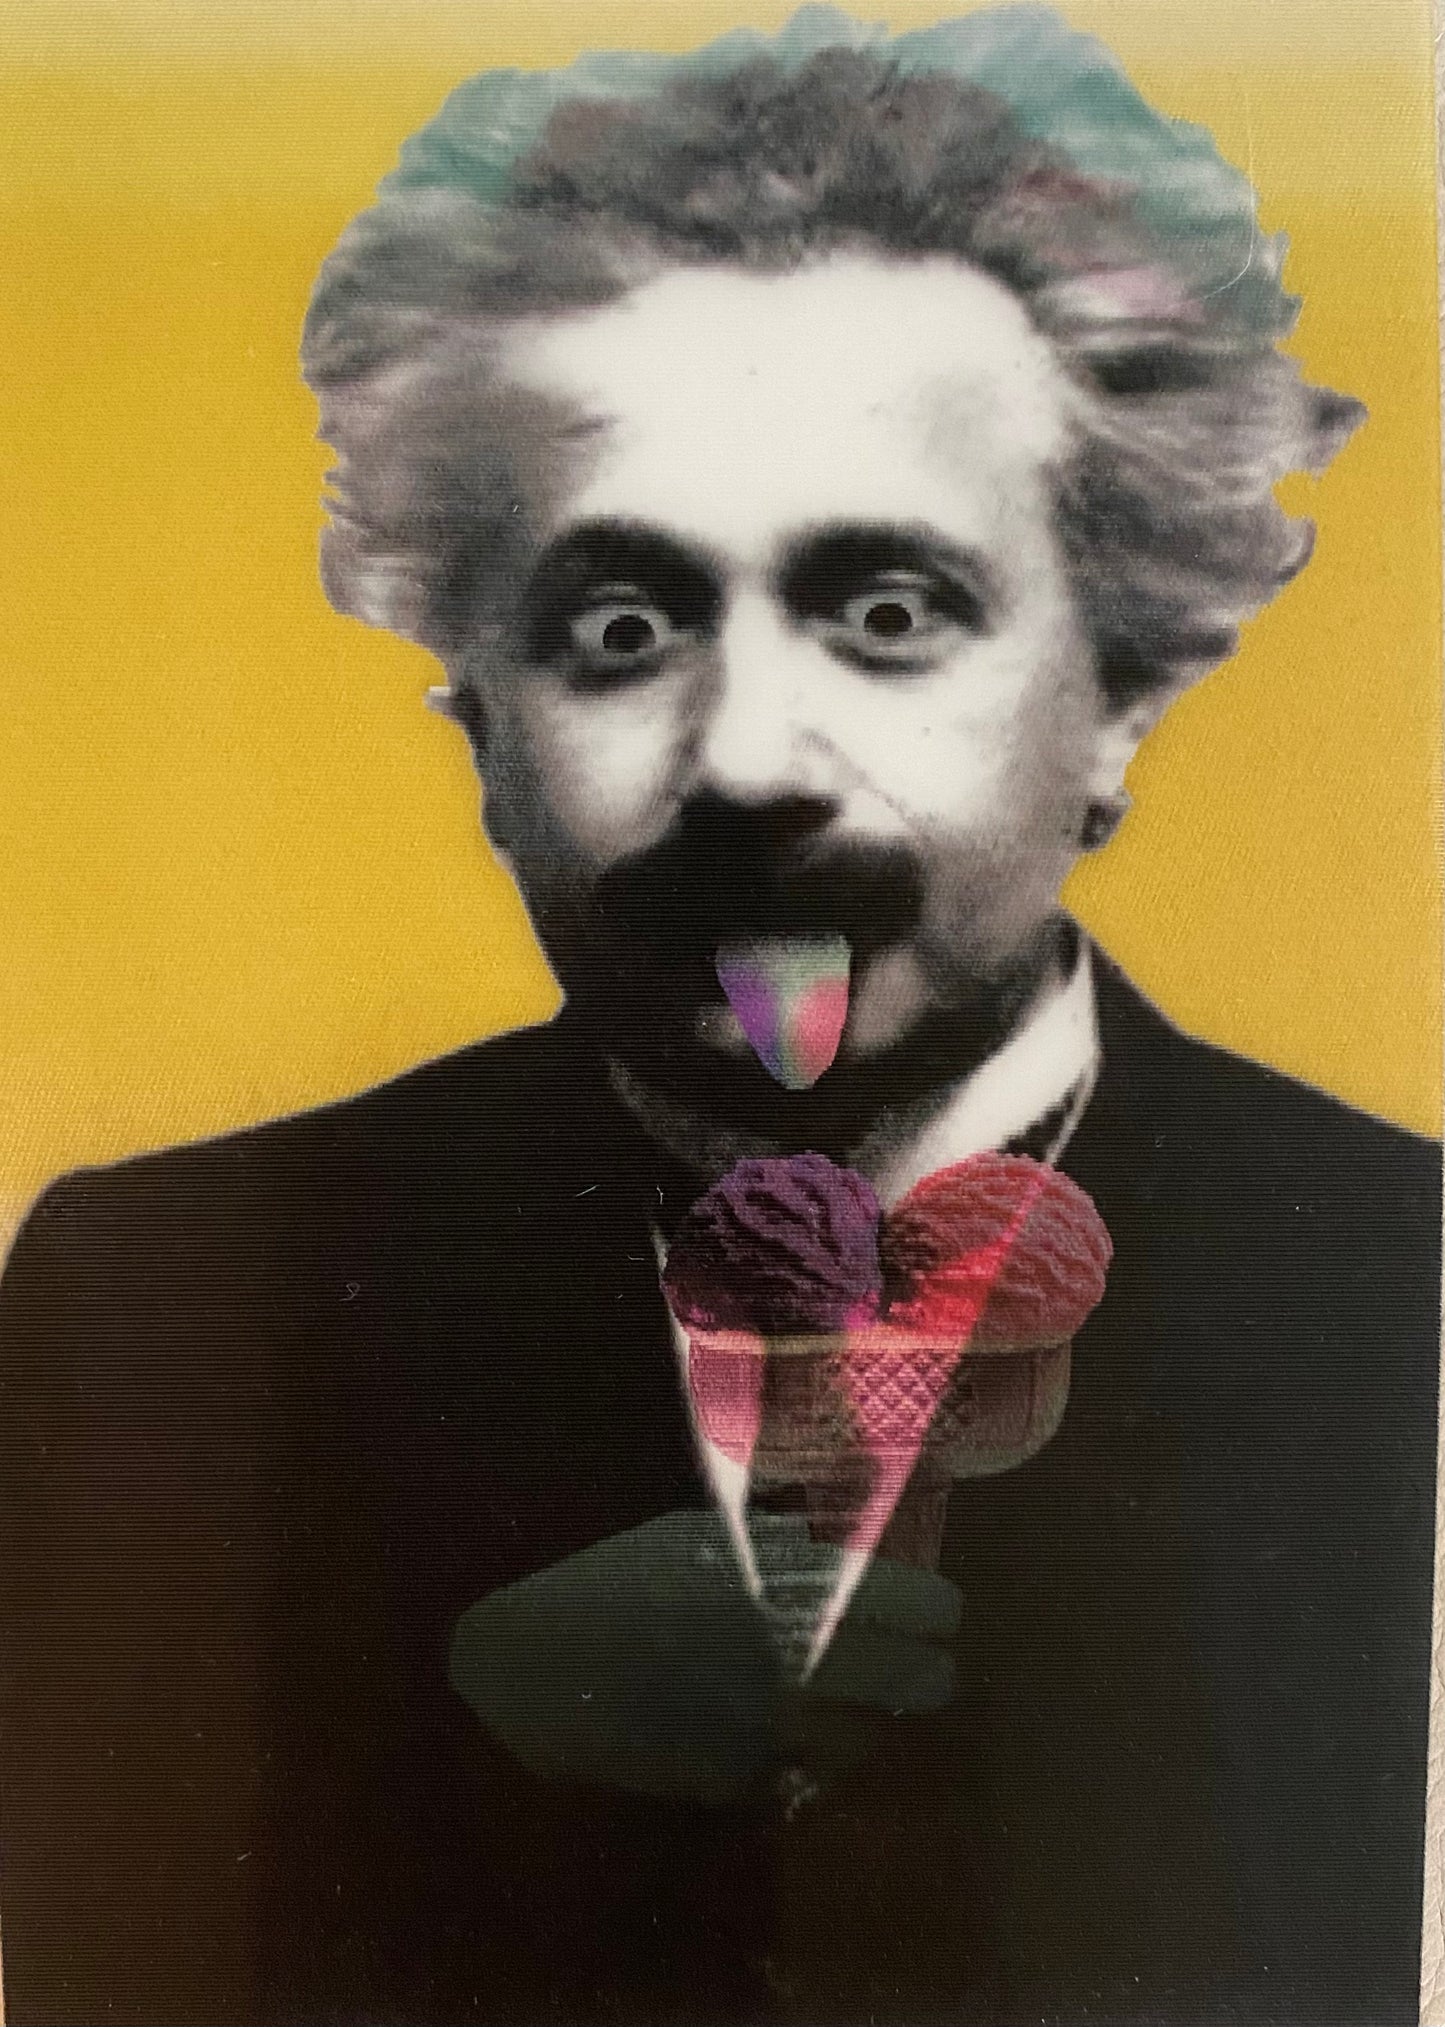 Lenticular Einstein 3D Postcard